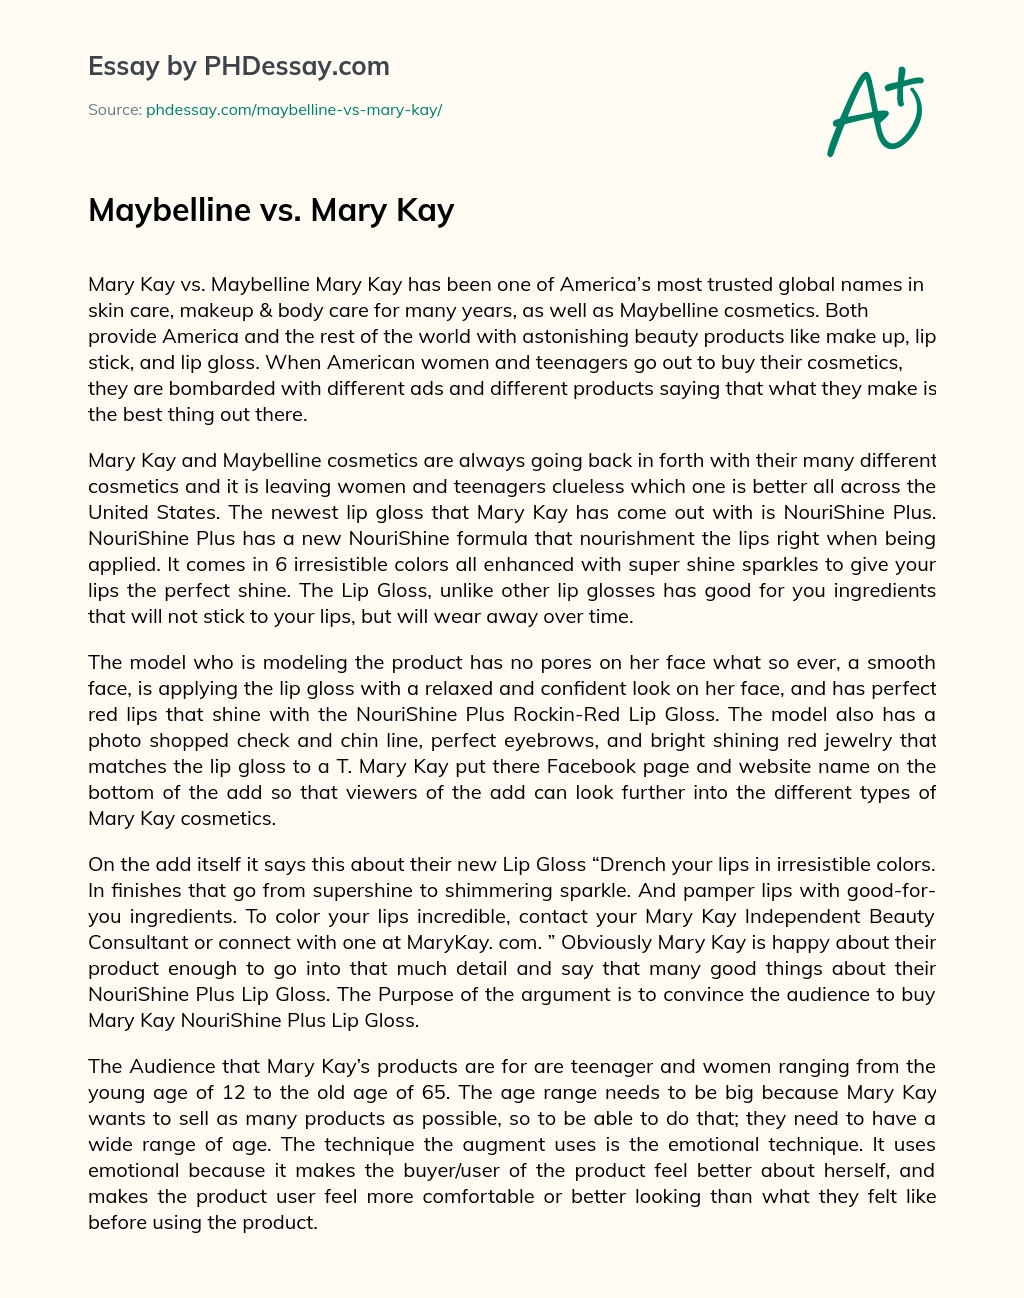 Maybelline vs. Mary Kay essay